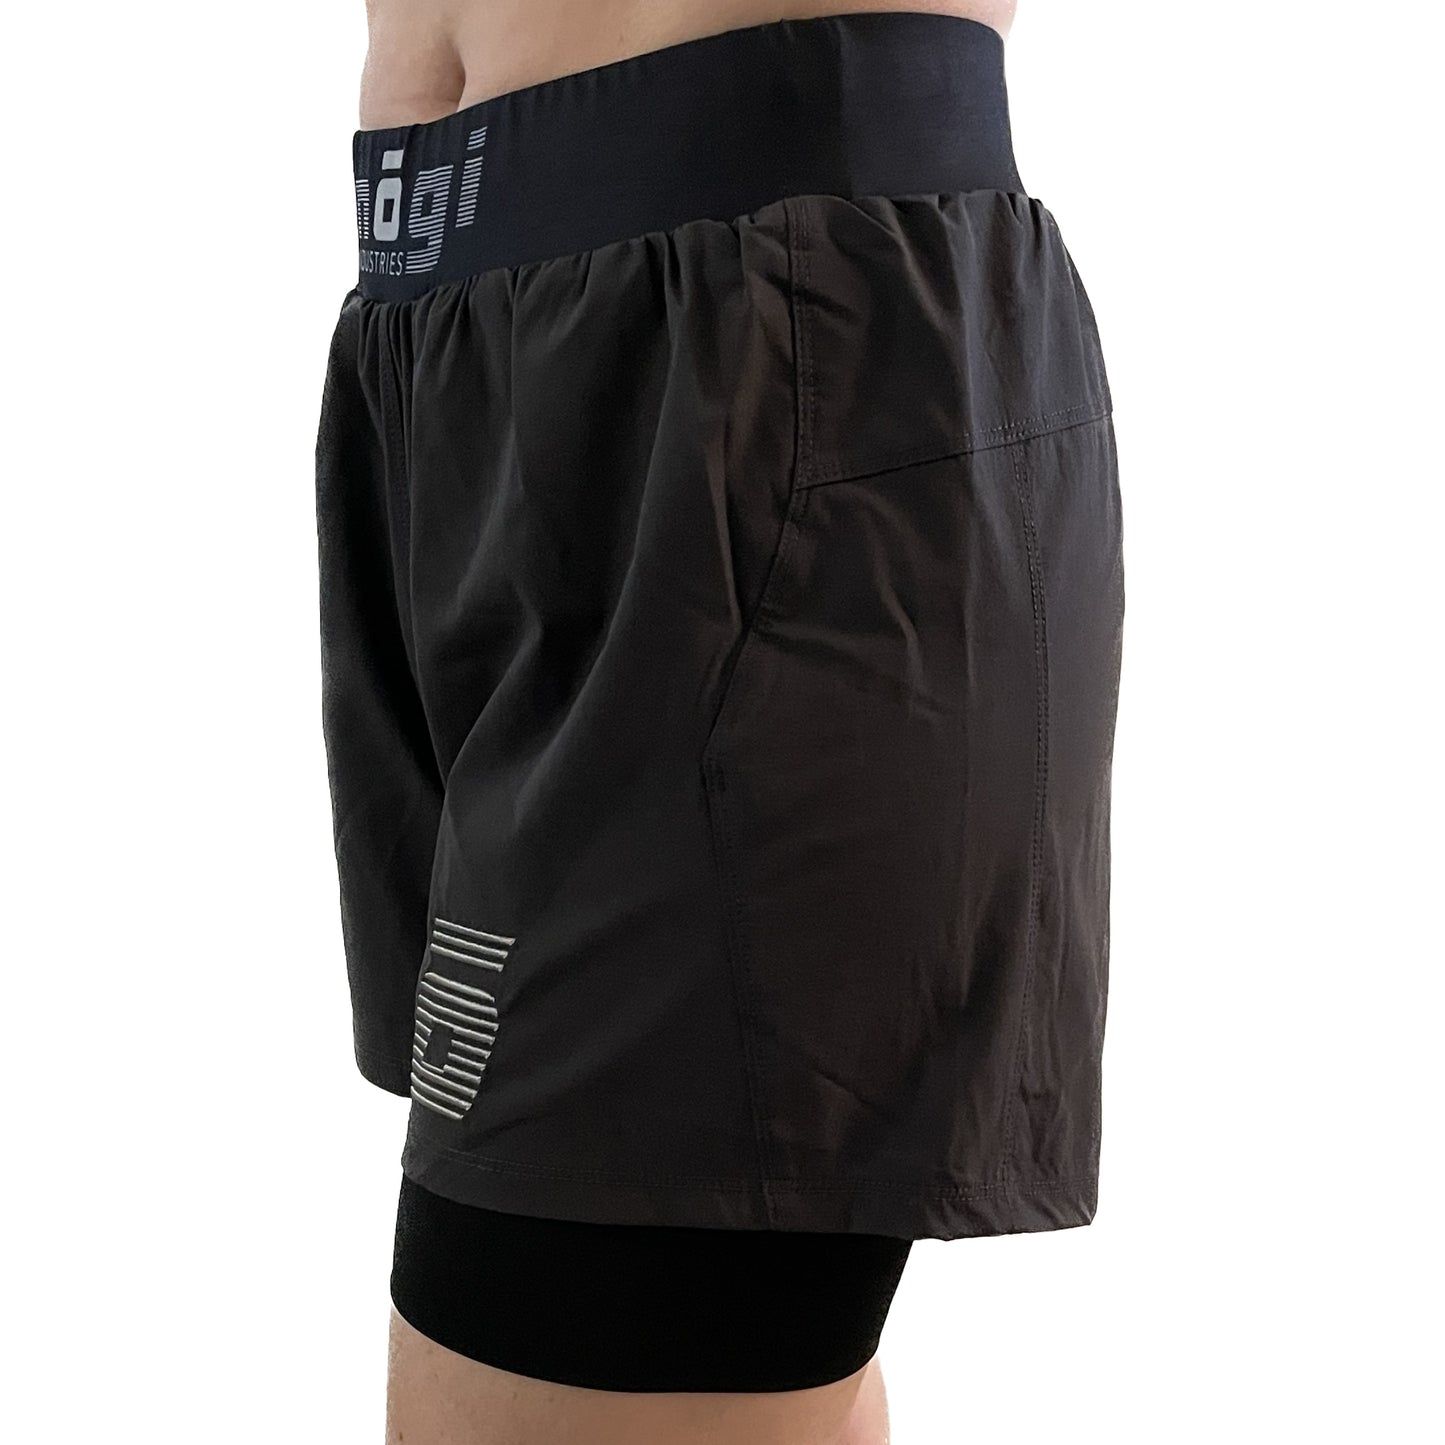 Pantalones cortos de agarre con forro premium Ghost de 5" para MUJER - New Jersey Grey 